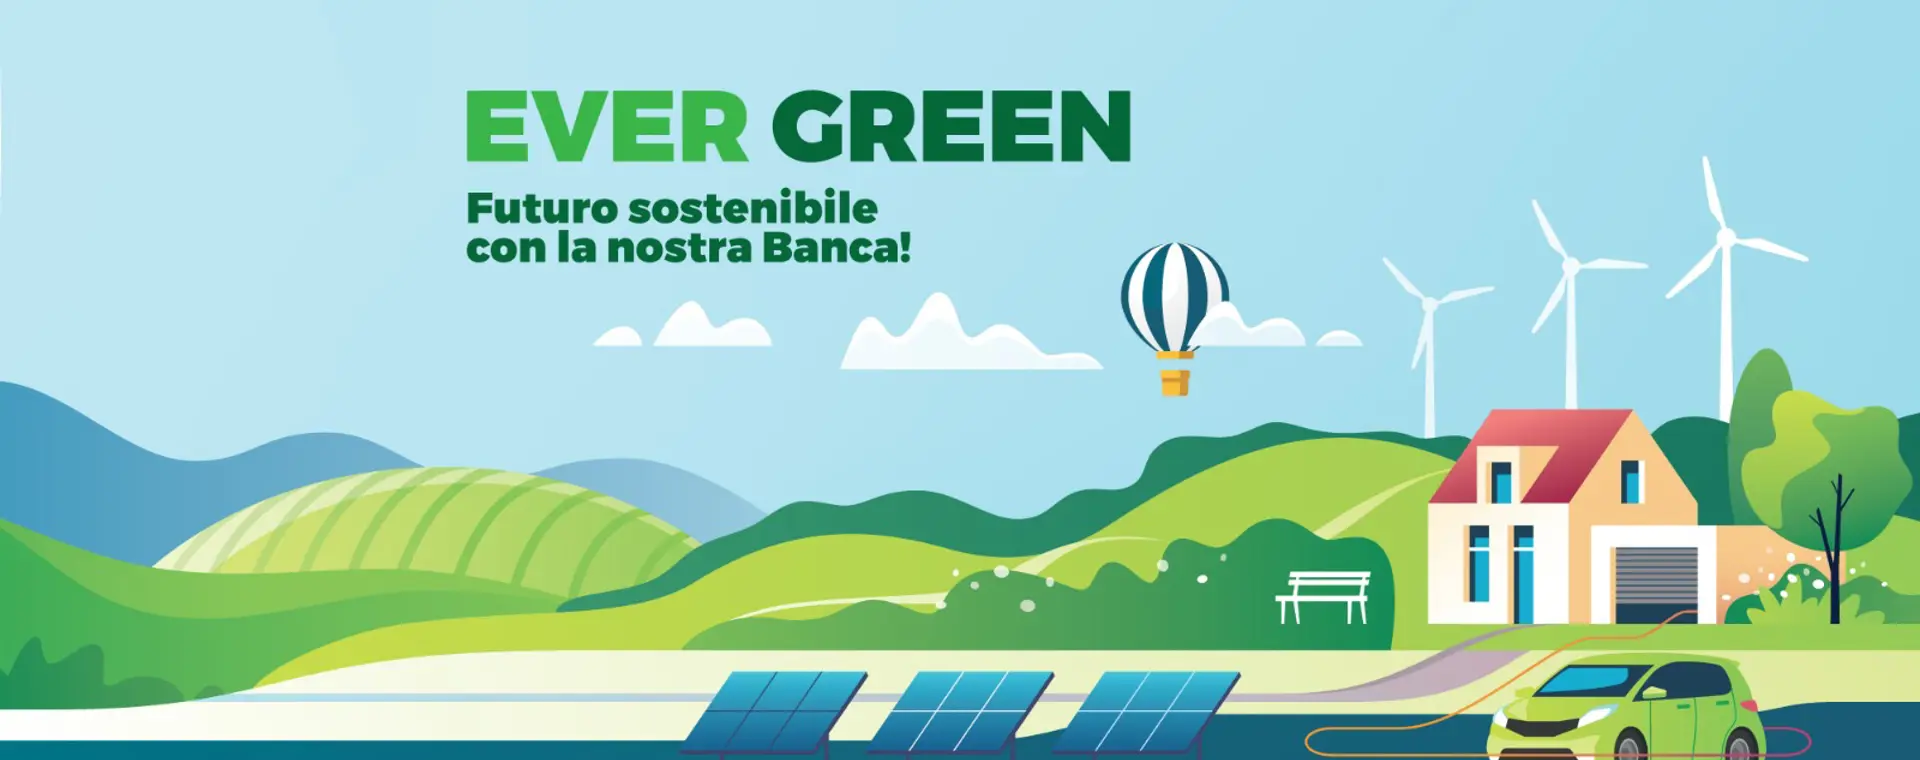 BCC San Marzano Ever Green. Scegli un futuro sostenibile con la n